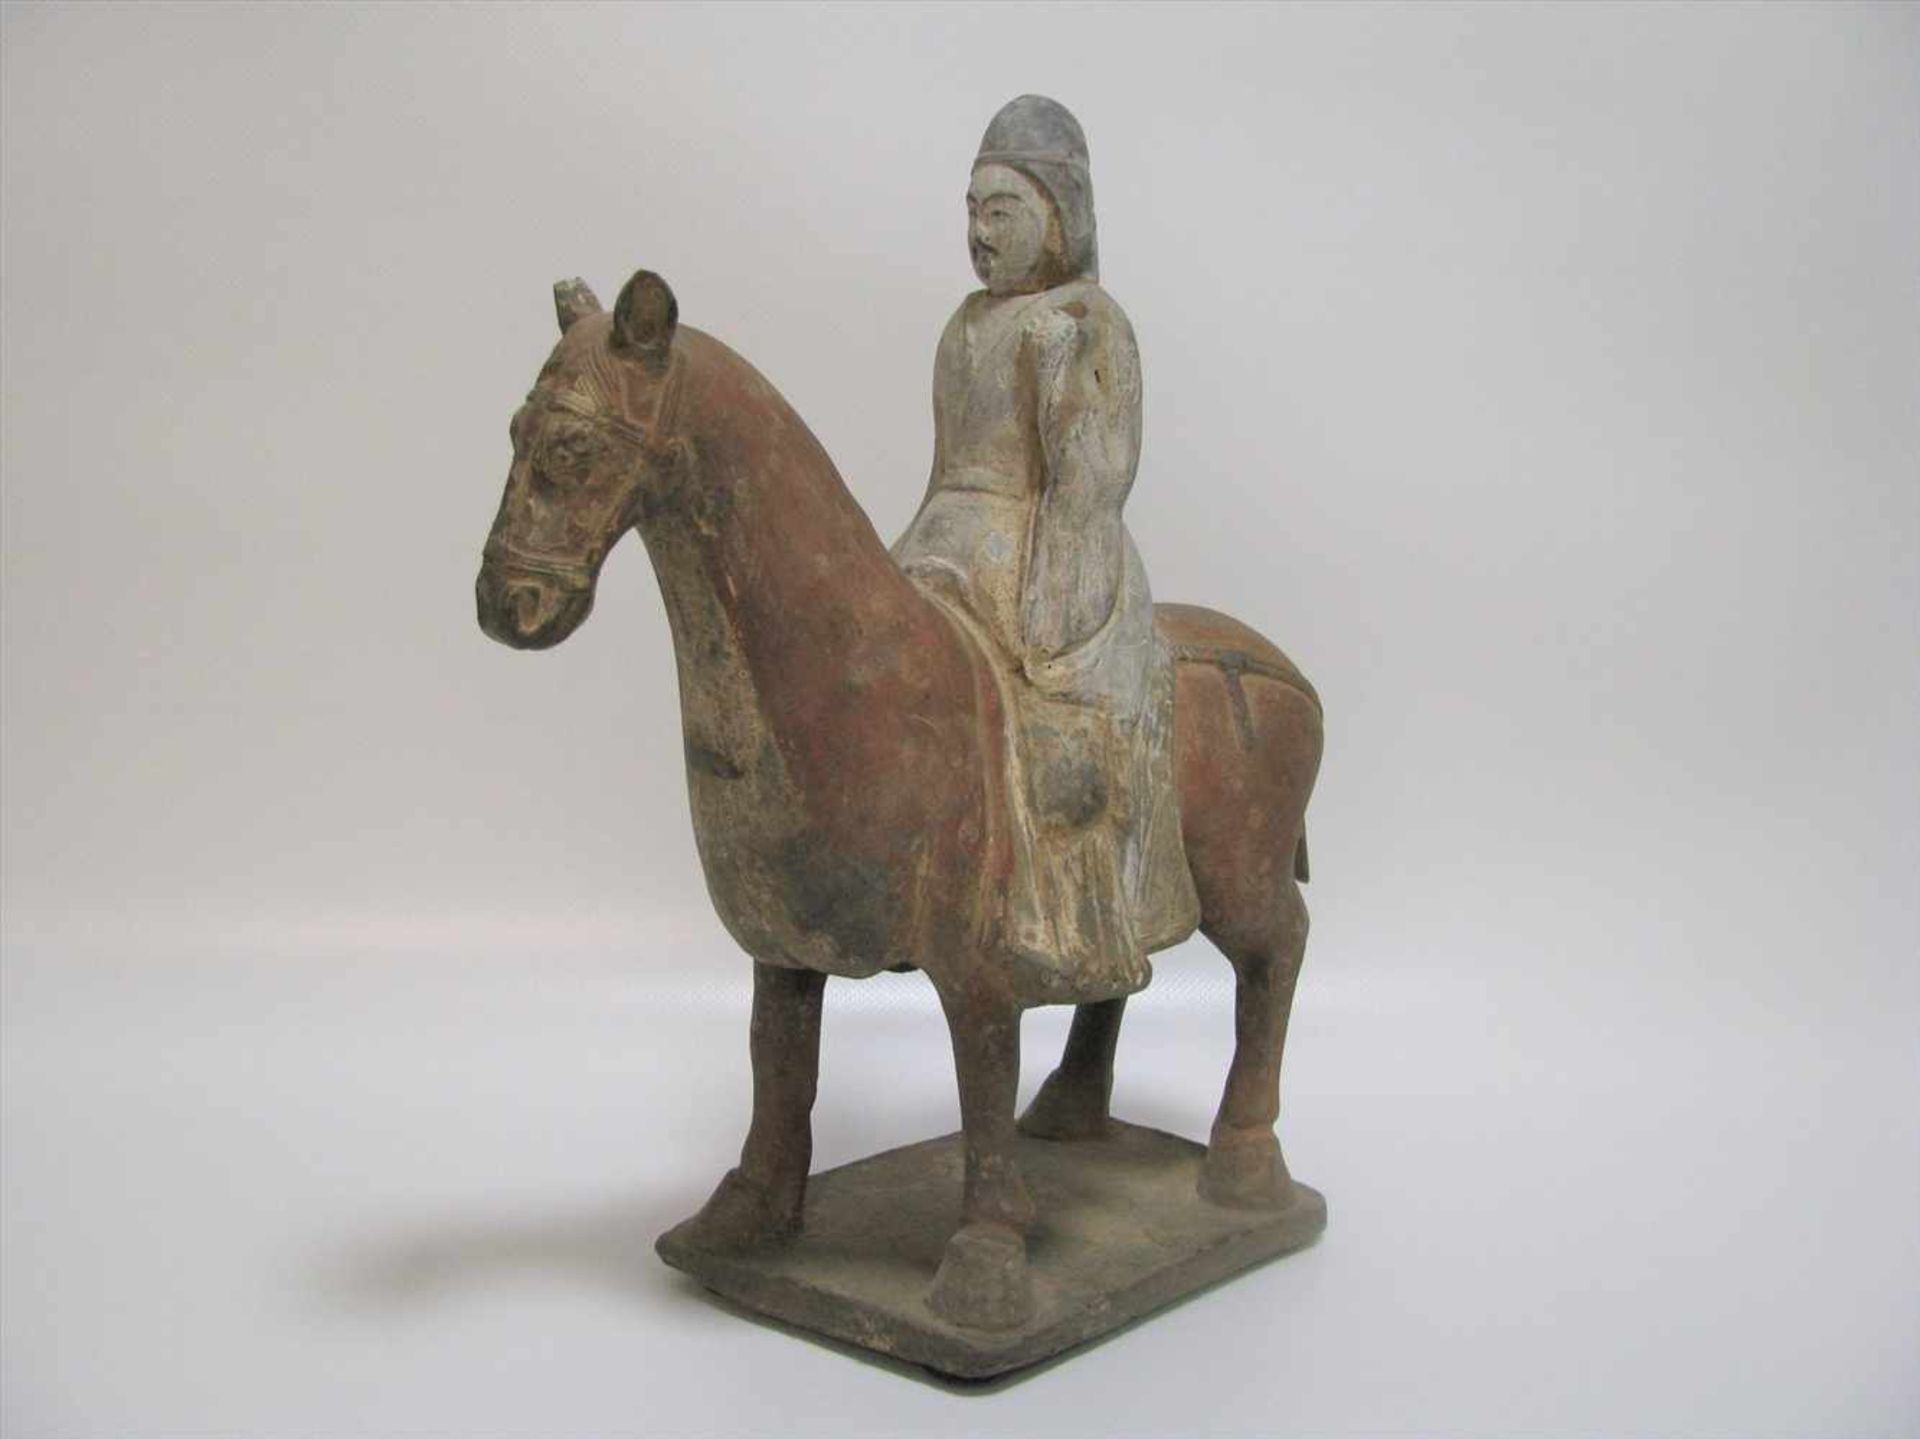 Reiter zu Pferd, China, Nördliche Qi Dynastie, 550 - 577 n.Chr., Terrakotta mit Resten von